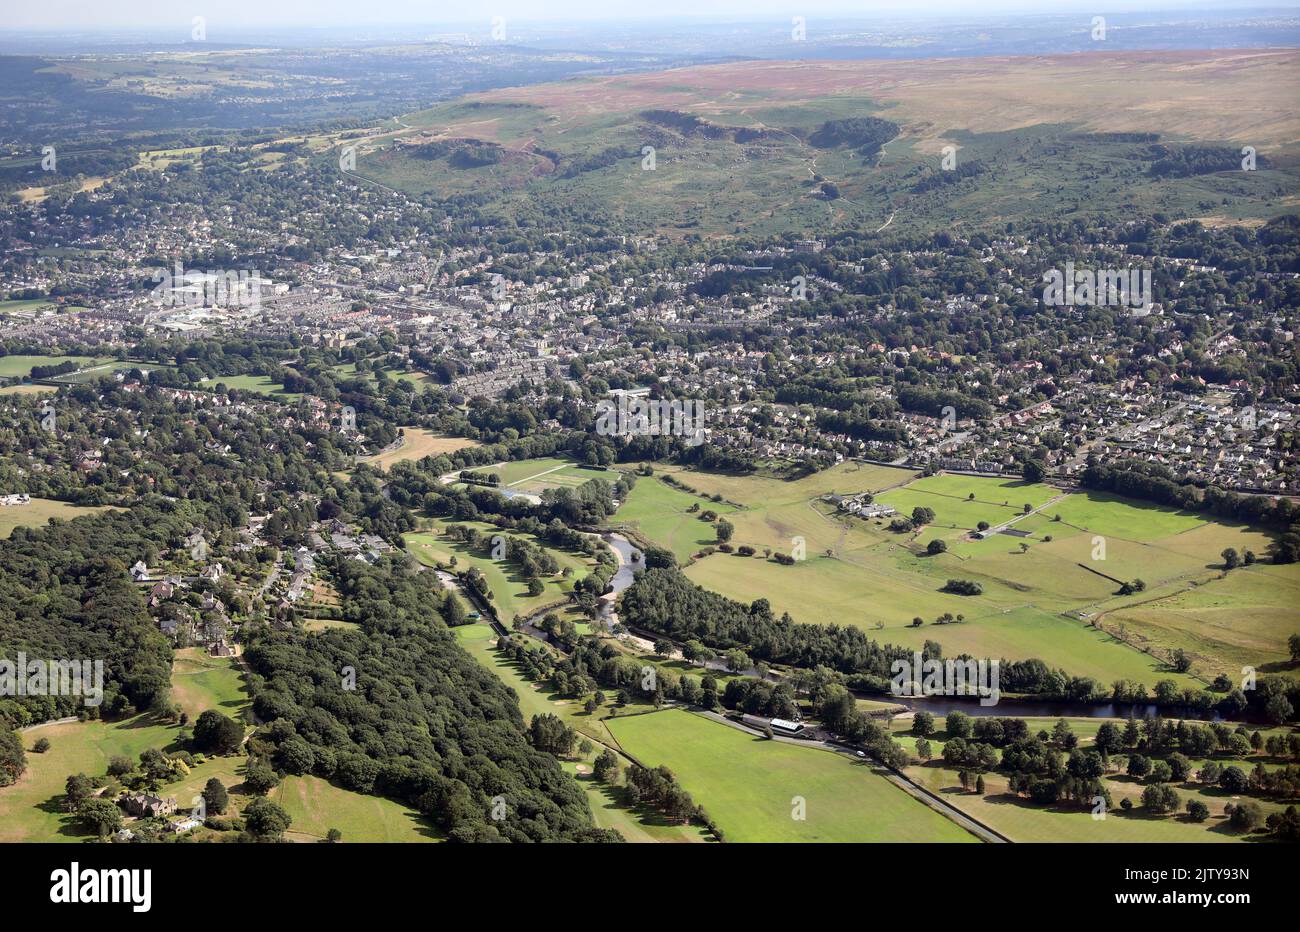 Vista aerea della città di Ilkley nello Yorkshire, con il fiume Wharfe in primo piano, il centro città e poi Ilkley Moor nel backgorund Foto Stock